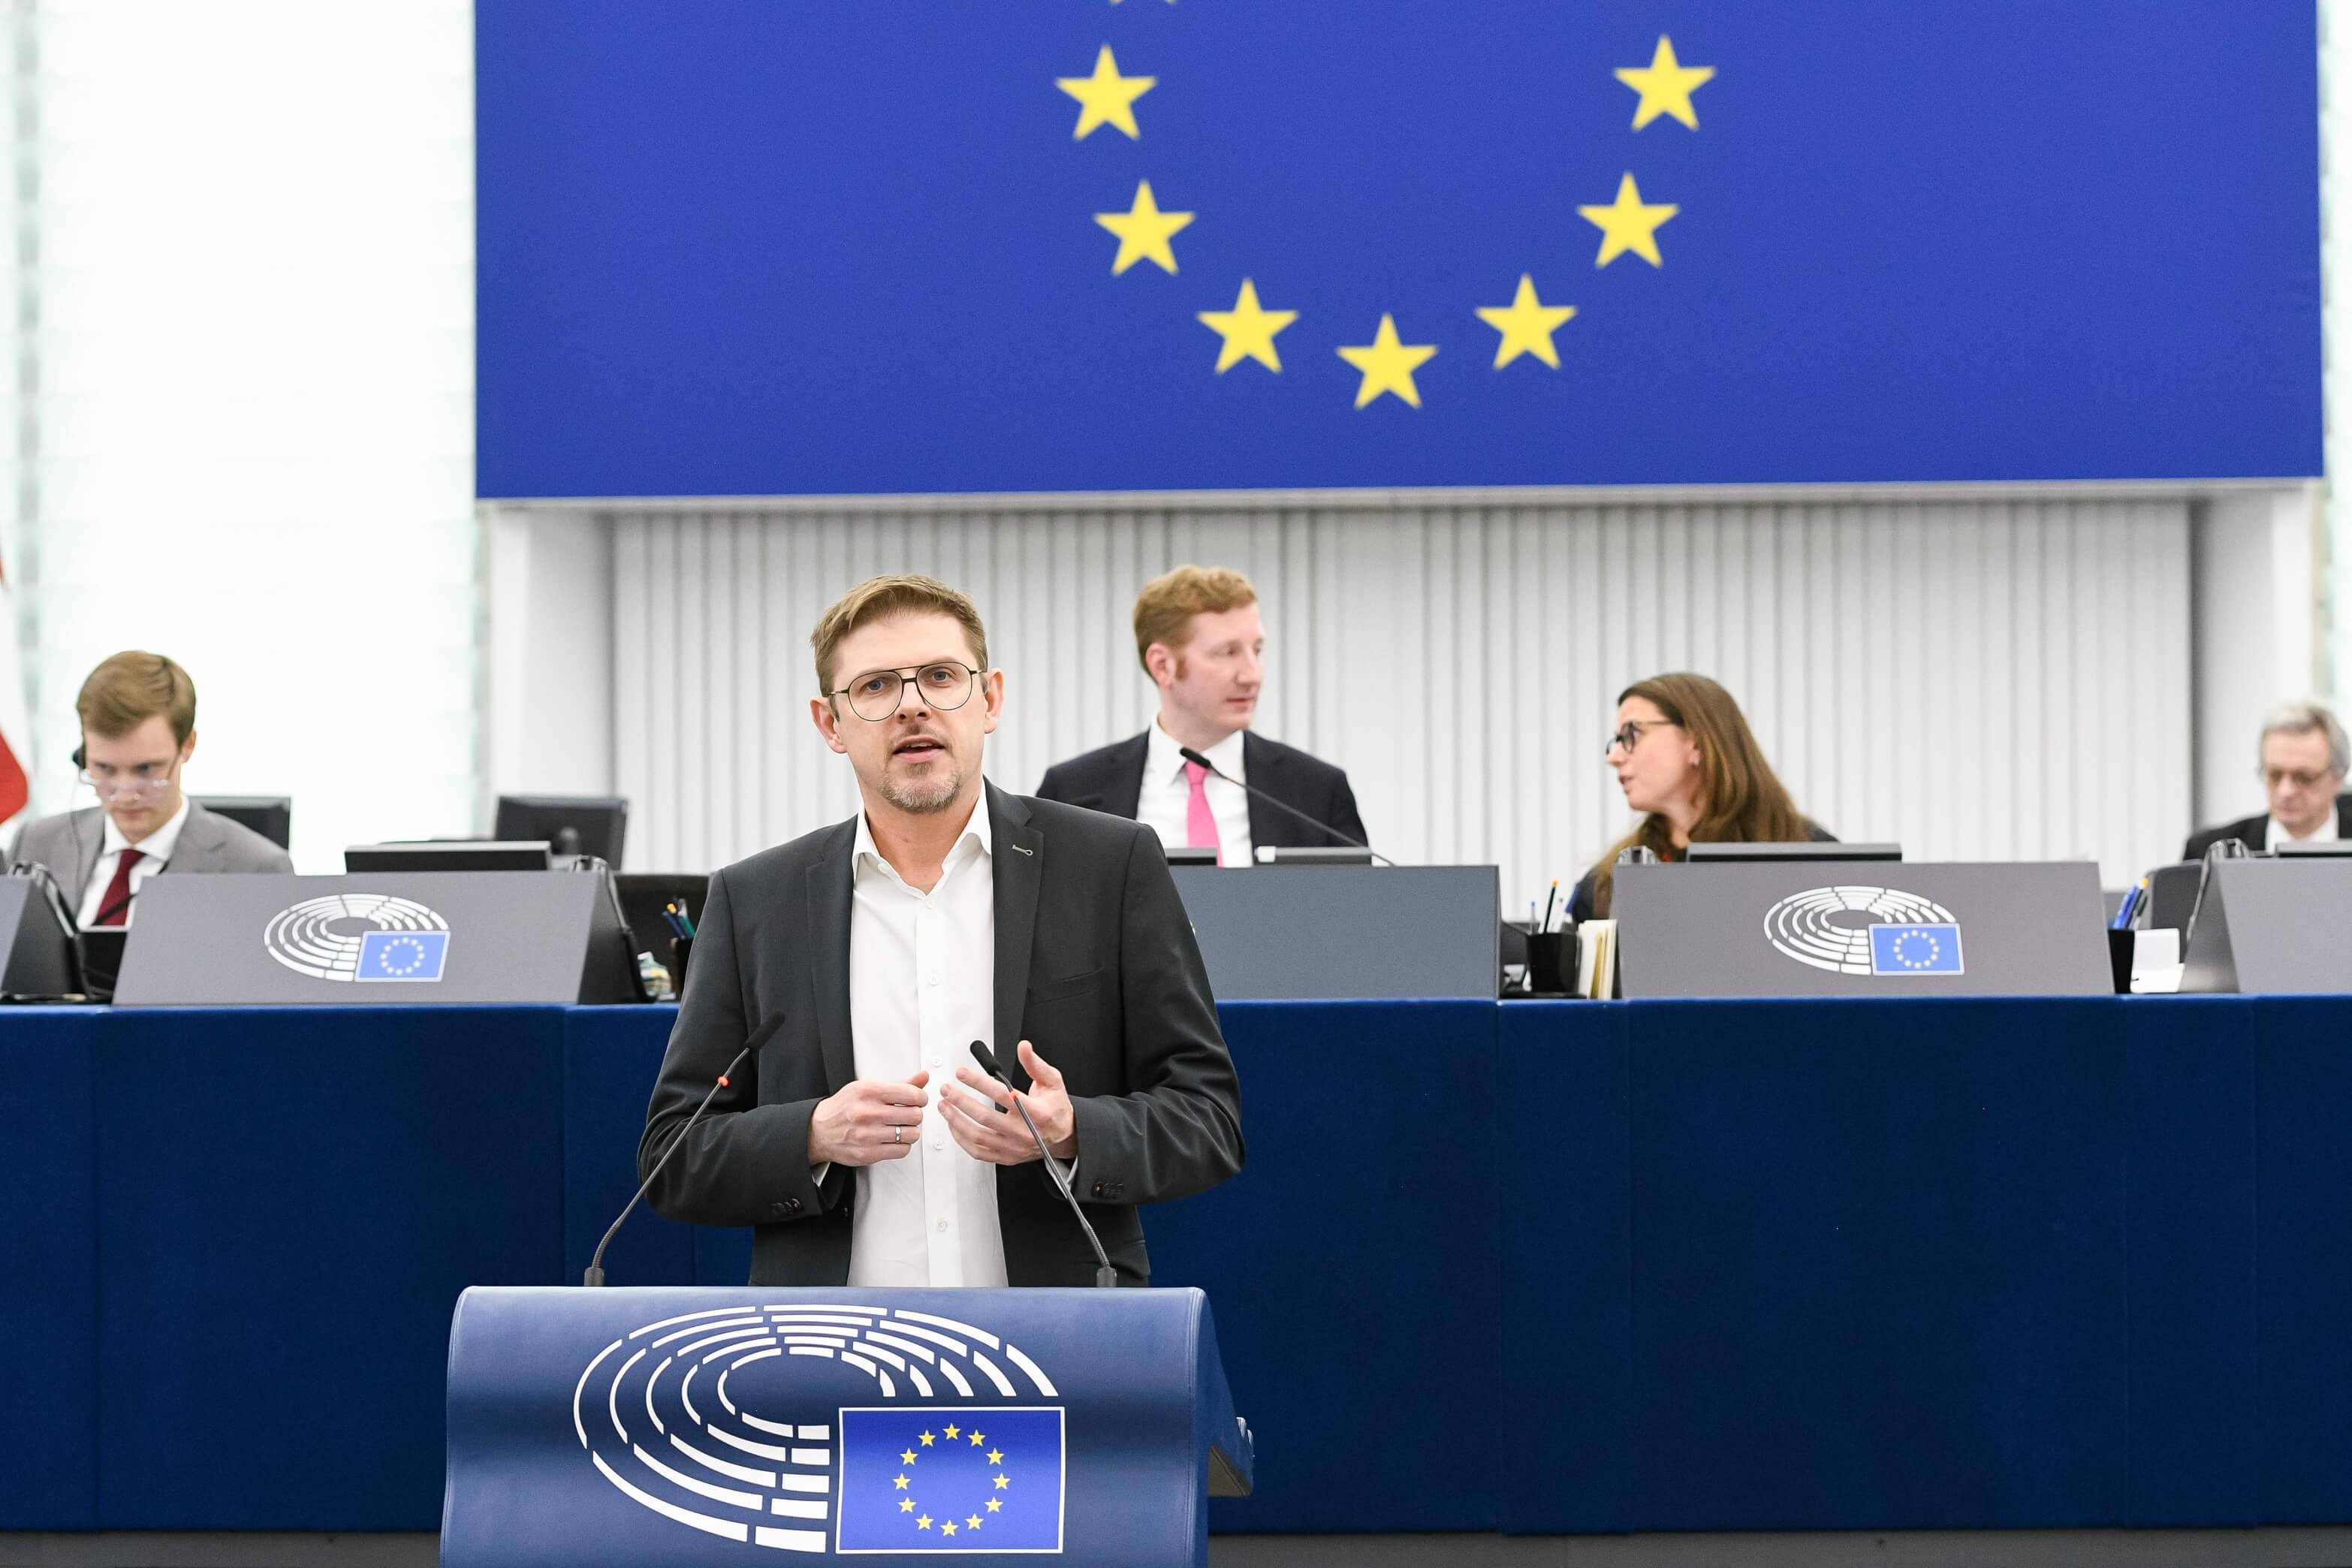 Mężczyzna z krótkimi włosami ciemny blond w okularach, białej koszuli i czarnej, casualowej marynarce stoi przy mównicy w sali plenarnej Parlamentu Europejskiego, w tle widać kawałek unijnej flagi oraz dwie osoby - kobietę i mężczyznę - innych europosłów